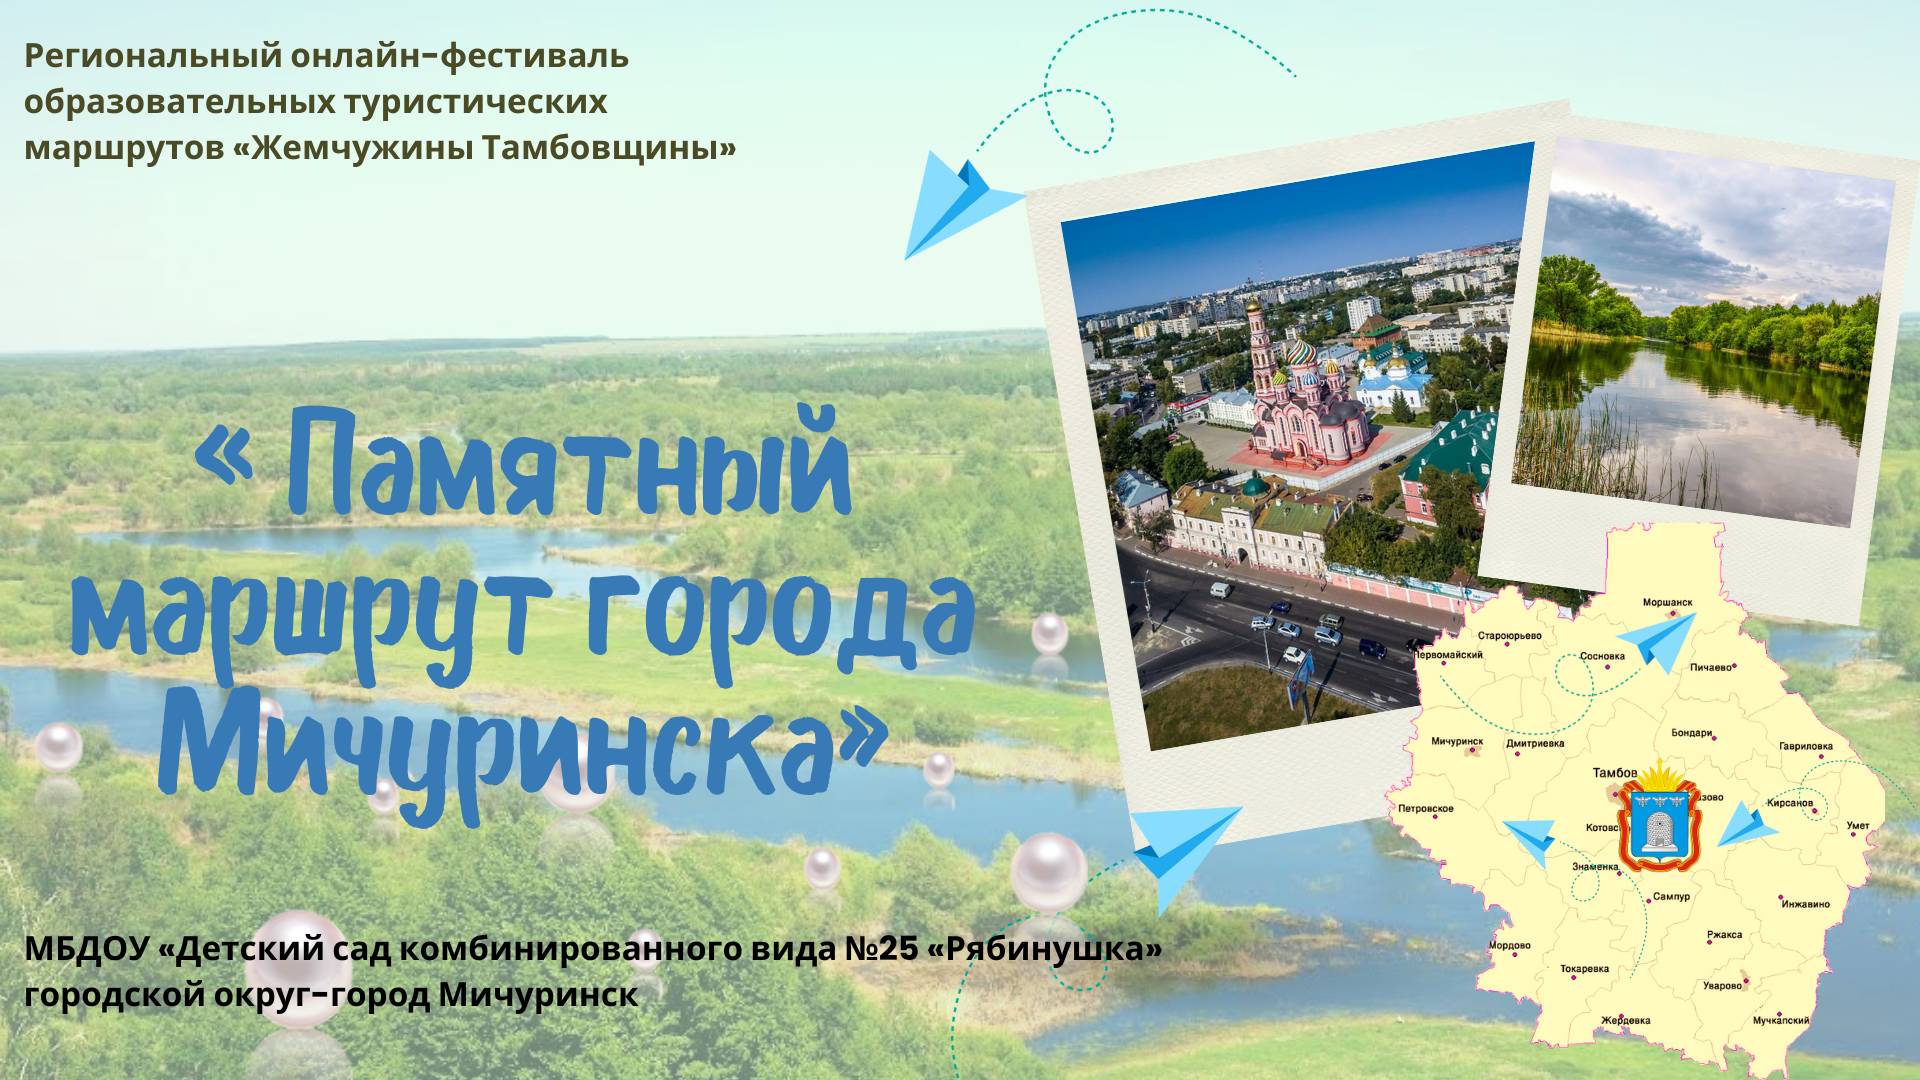 "Памятный маршрут города Мичуринска"